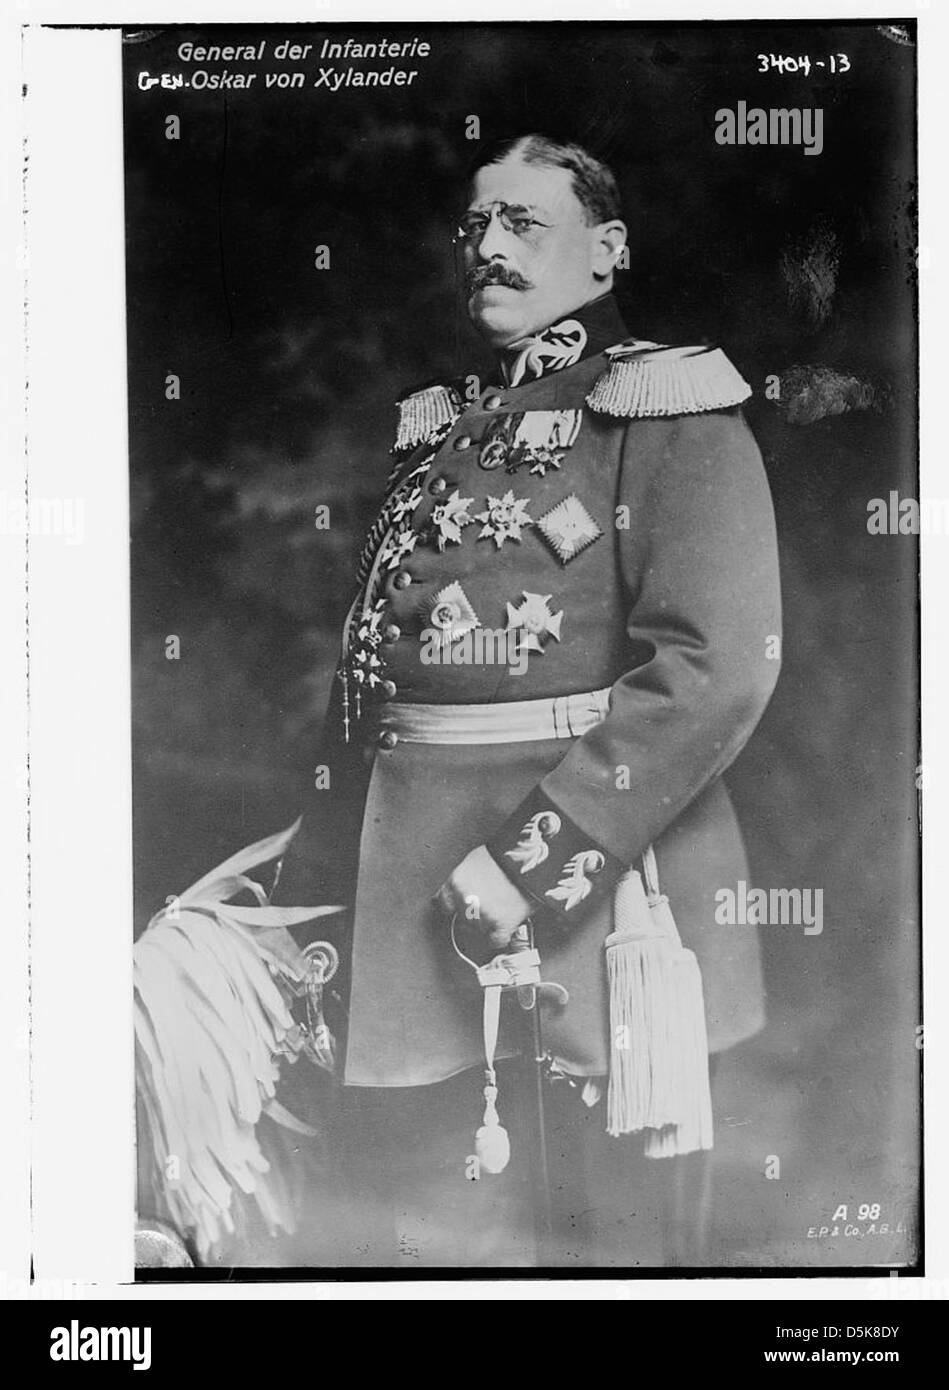 General der Infanterie: Gen. Oskar von Xylander (LOC) Stock Photo